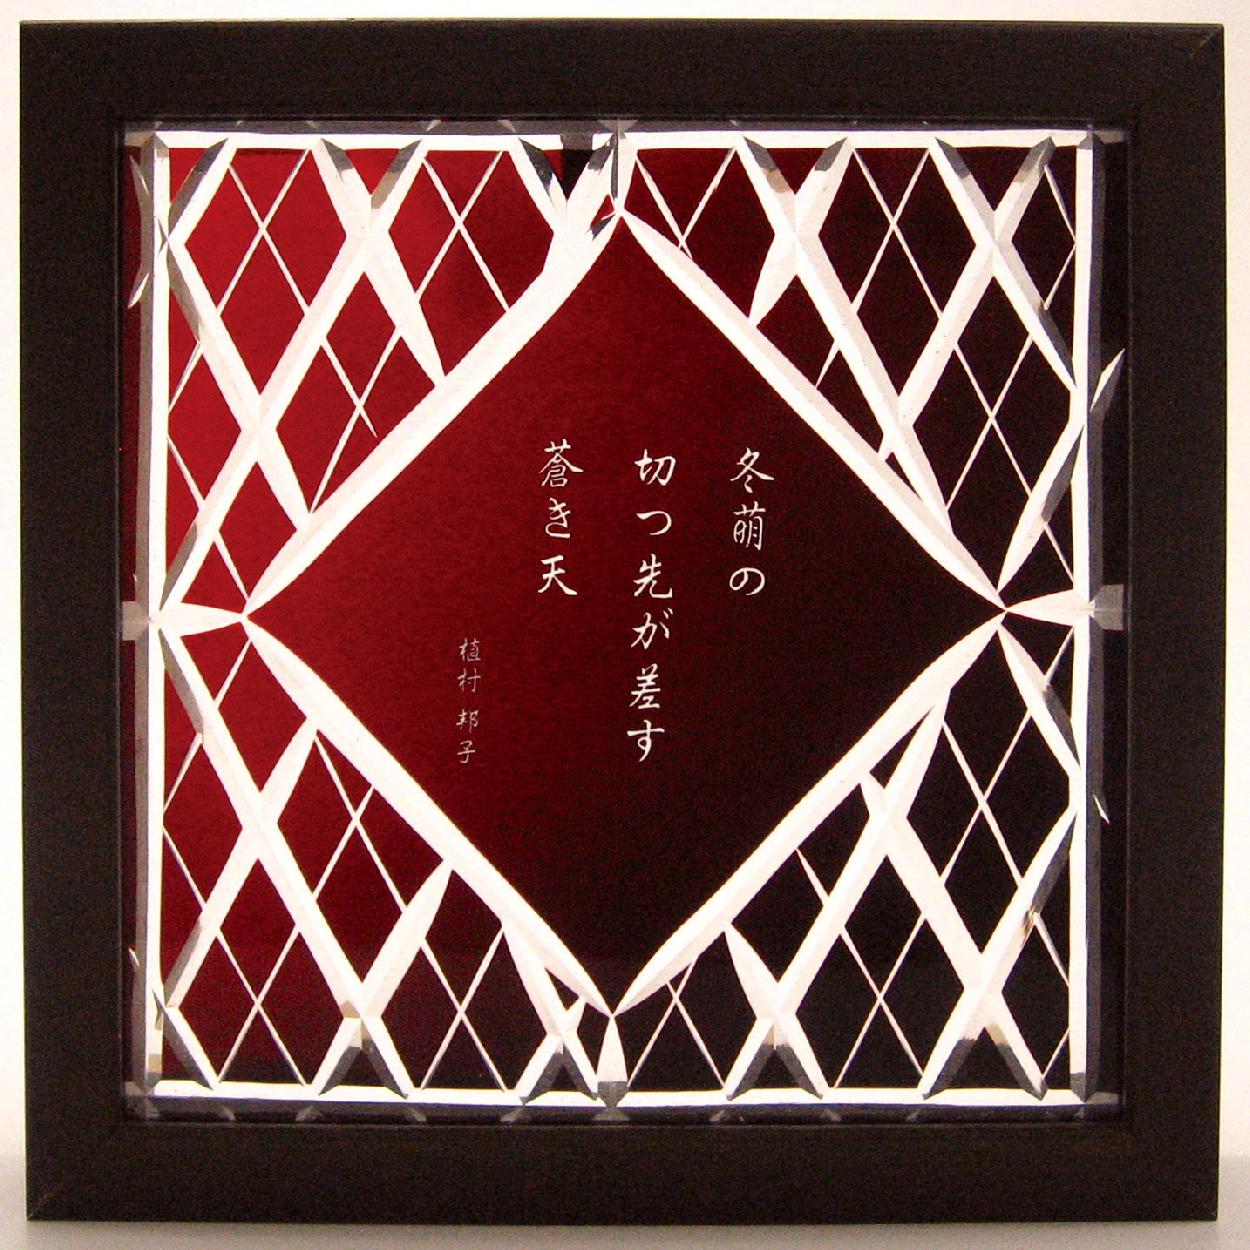 Shinozaki Aiko,Uemura Kuniko, Haïku, poésie de la  vie, 6 april - 11 april 2010